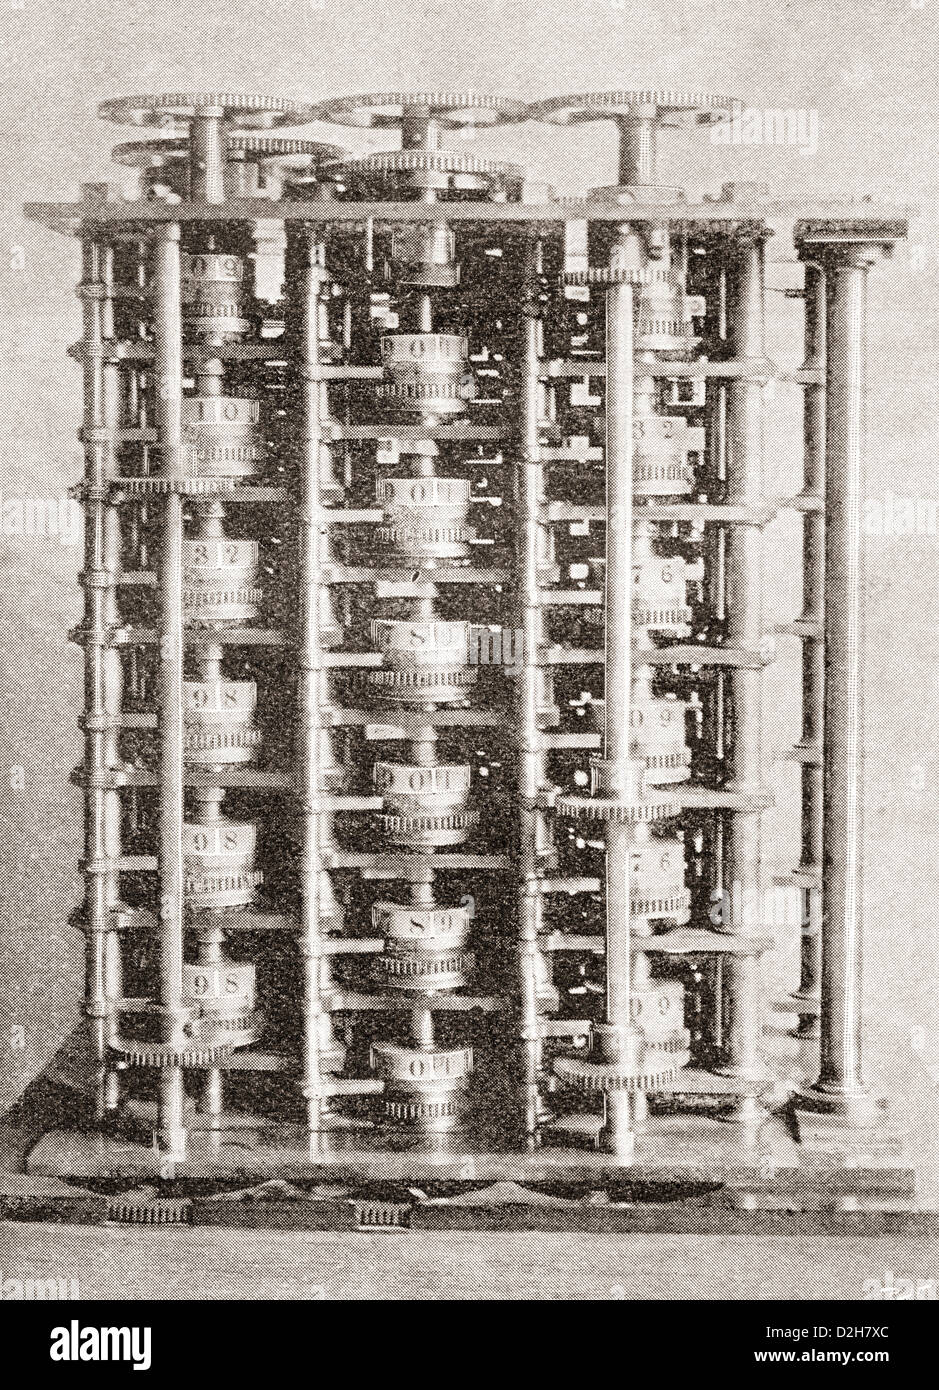 Motore di differenza di Babbage Macchina per calcolare, inventato da Charles Babbage nel 1822. Foto Stock